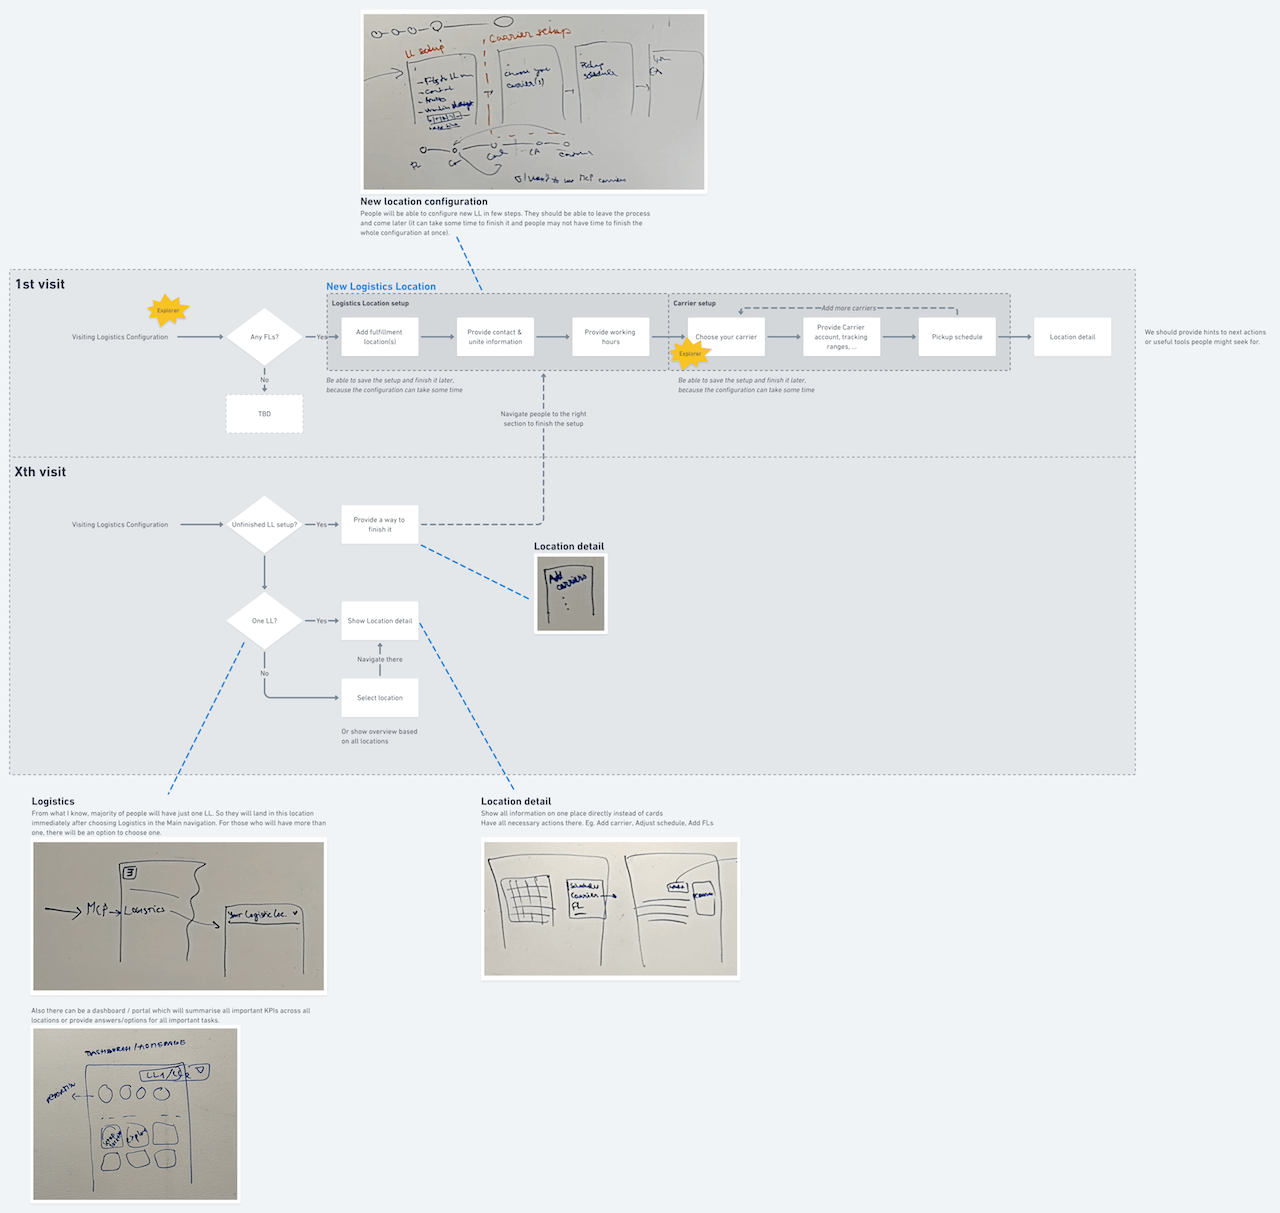 Vizualizace možného řešení pomocí diagramu je super pro rozmýšlení různých stavů a pro optimalizaci cesty. Ne všichni ale dokážou diagram snadno přečíst, hlavně pokud zobrazuje něco komplexnějšího.